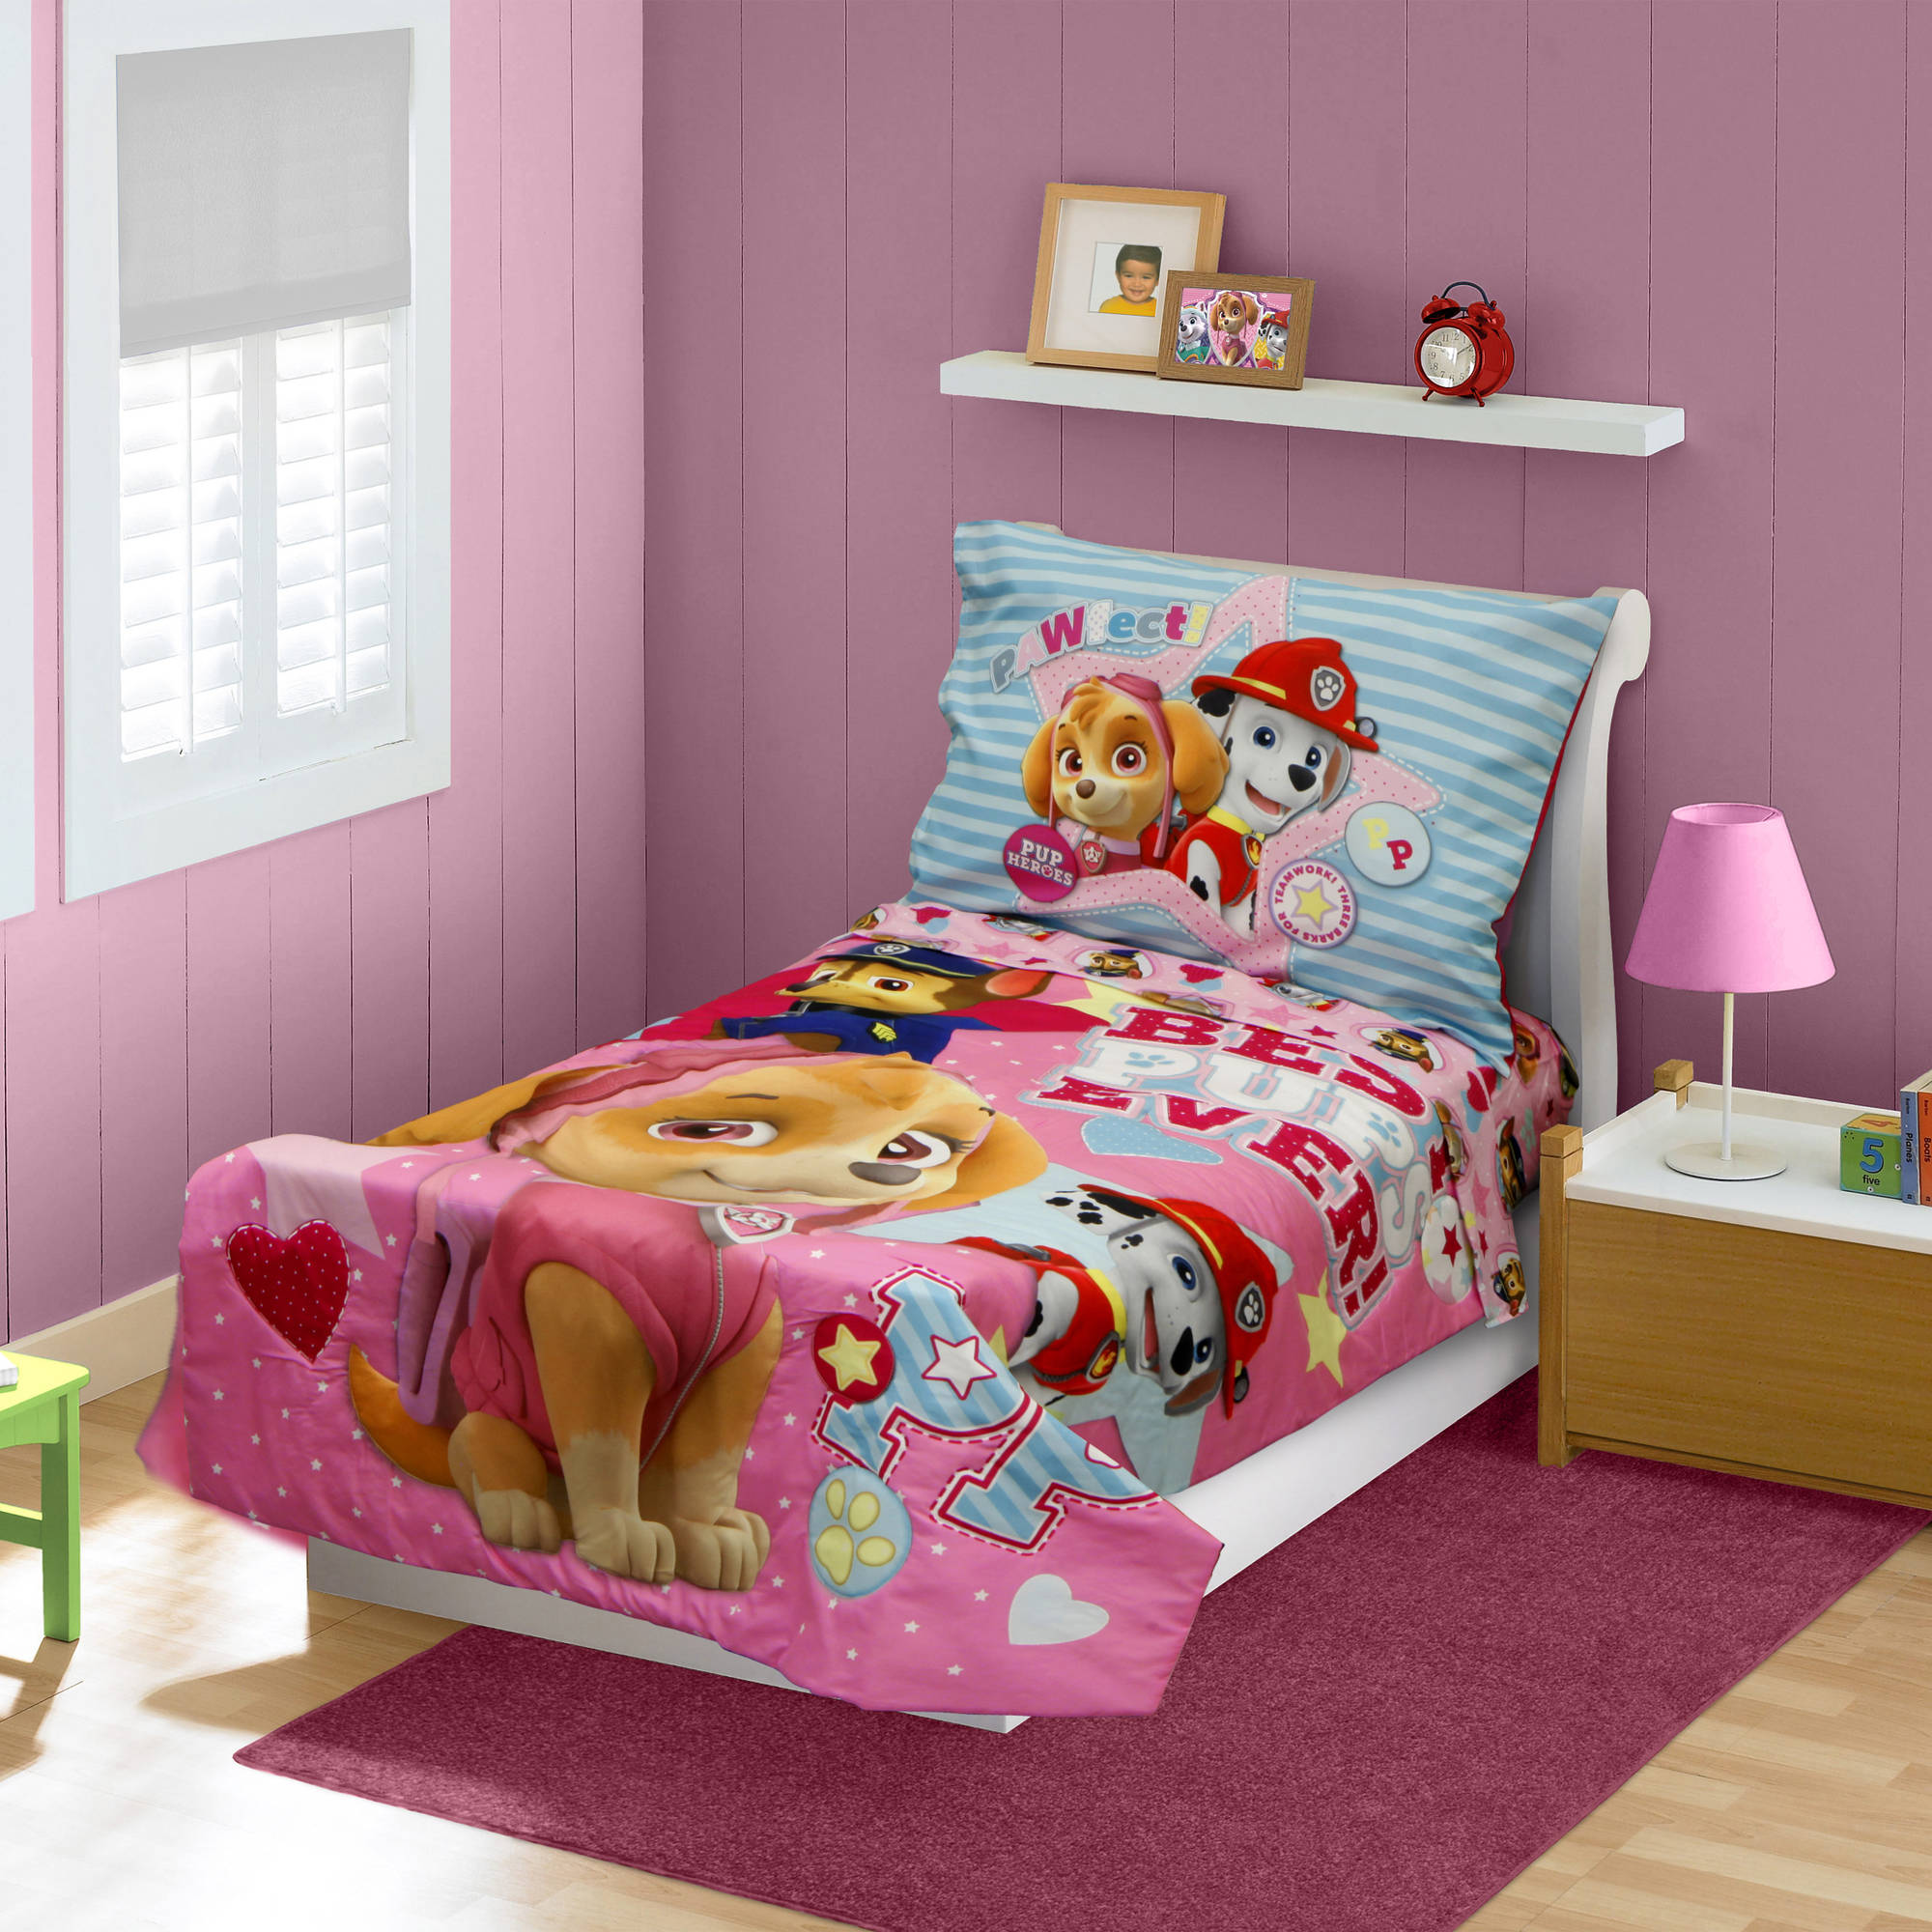 Nickelodeon PAW Patrol Toddler Boy's 4 Piece Bedding Set Baby 